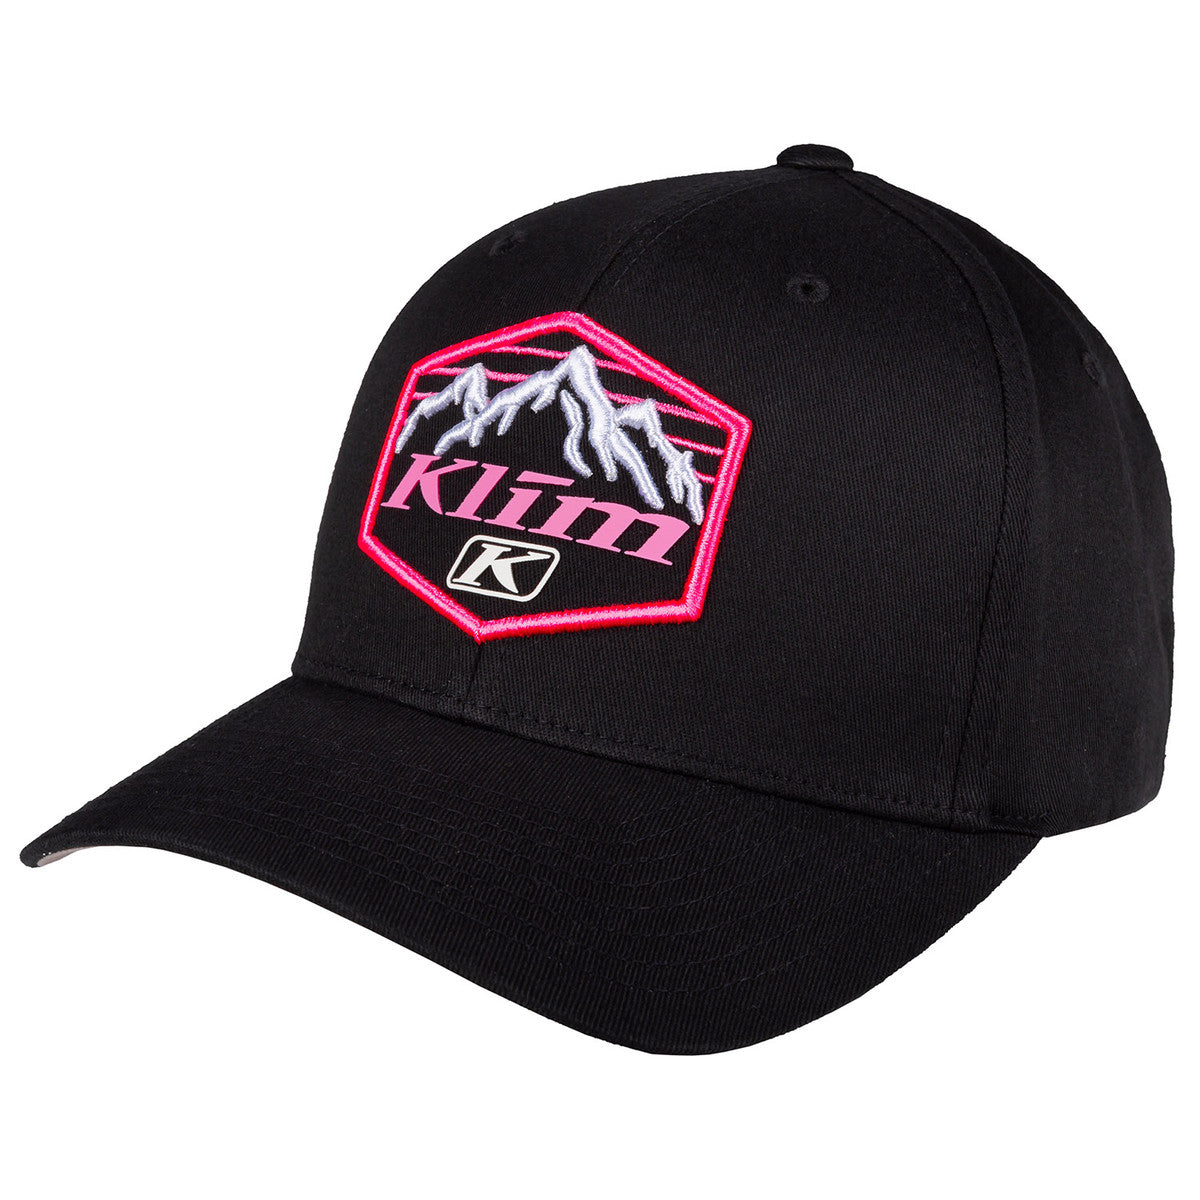 Klim Glacier Black - Knockout Pink Hat